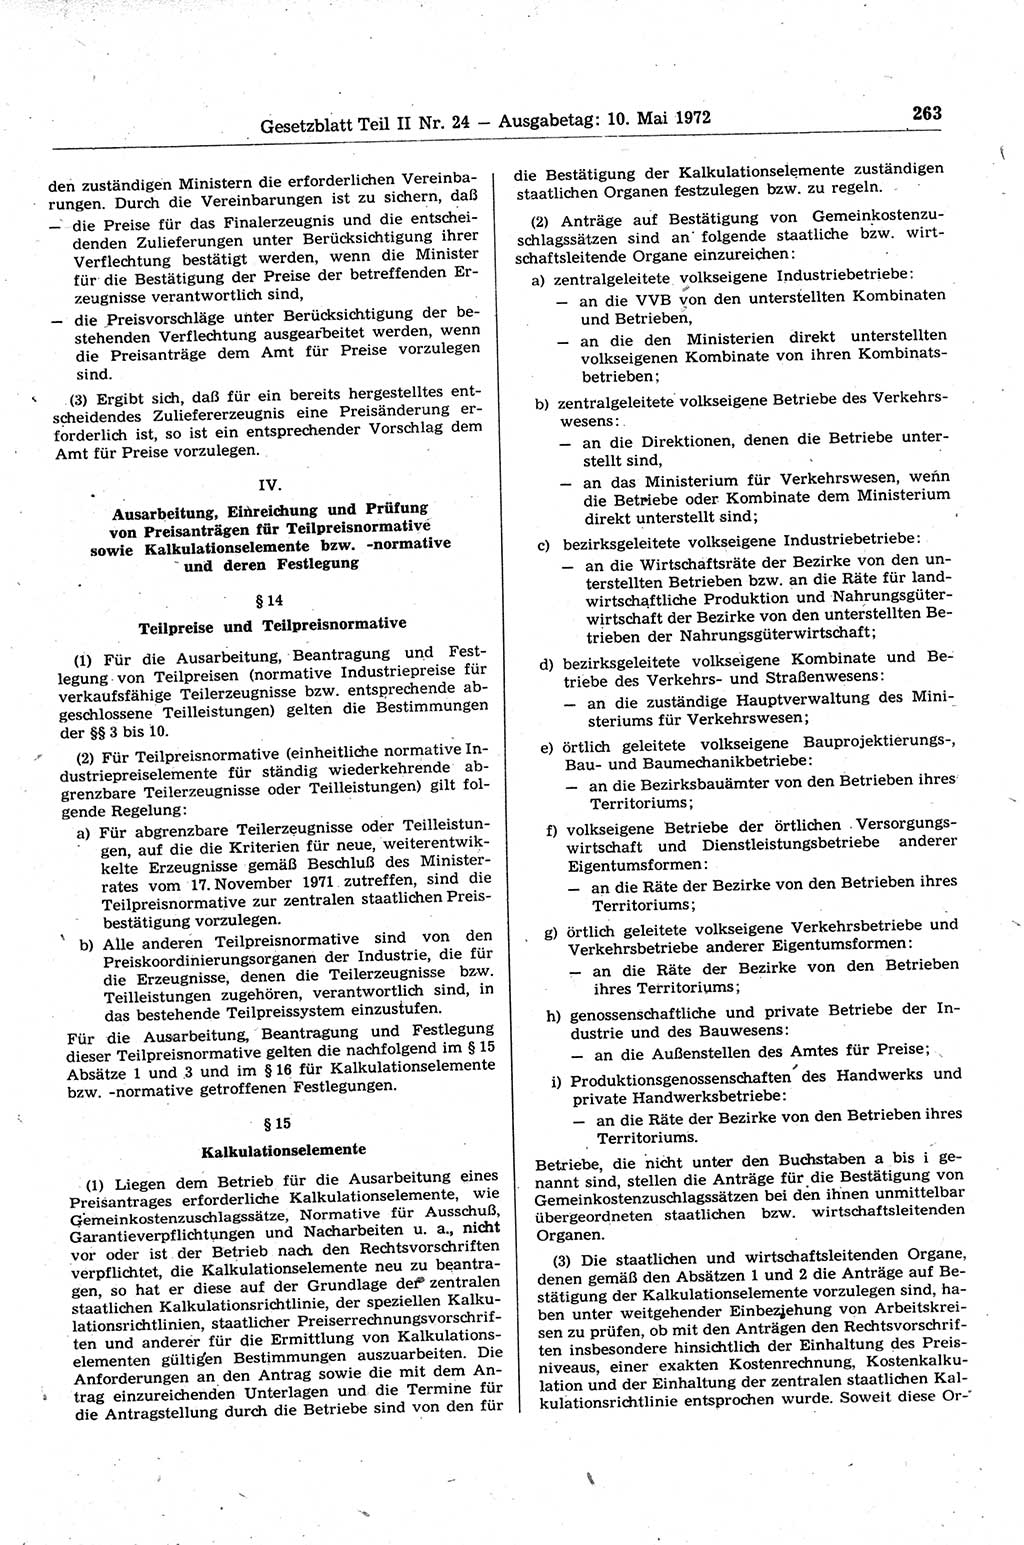 Gesetzblatt (GBl.) der Deutschen Demokratischen Republik (DDR) Teil ⅠⅠ 1972, Seite 263 (GBl. DDR ⅠⅠ 1972, S. 263)